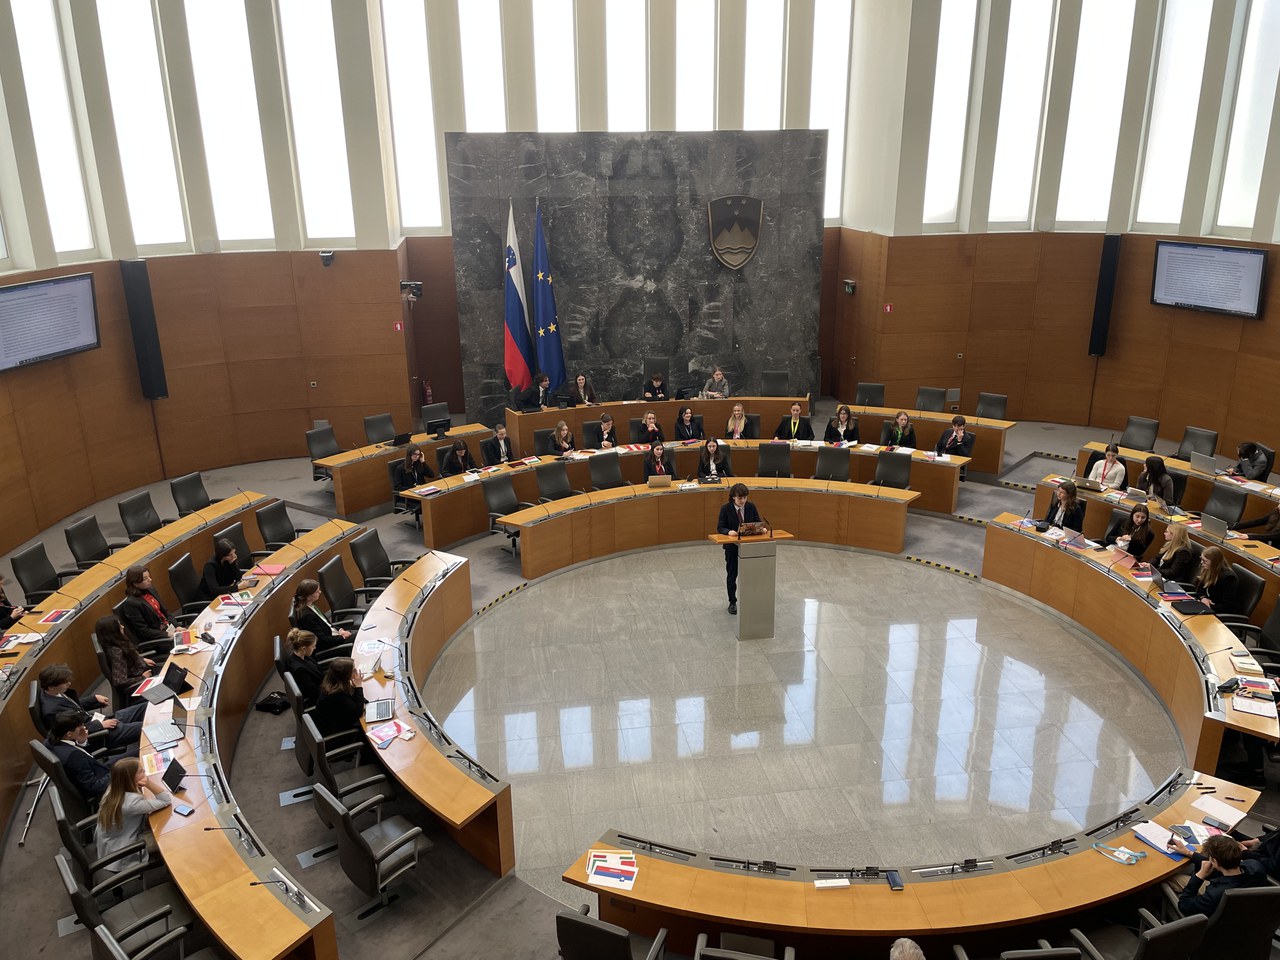 Présentation finale au parlement de Ljubljana